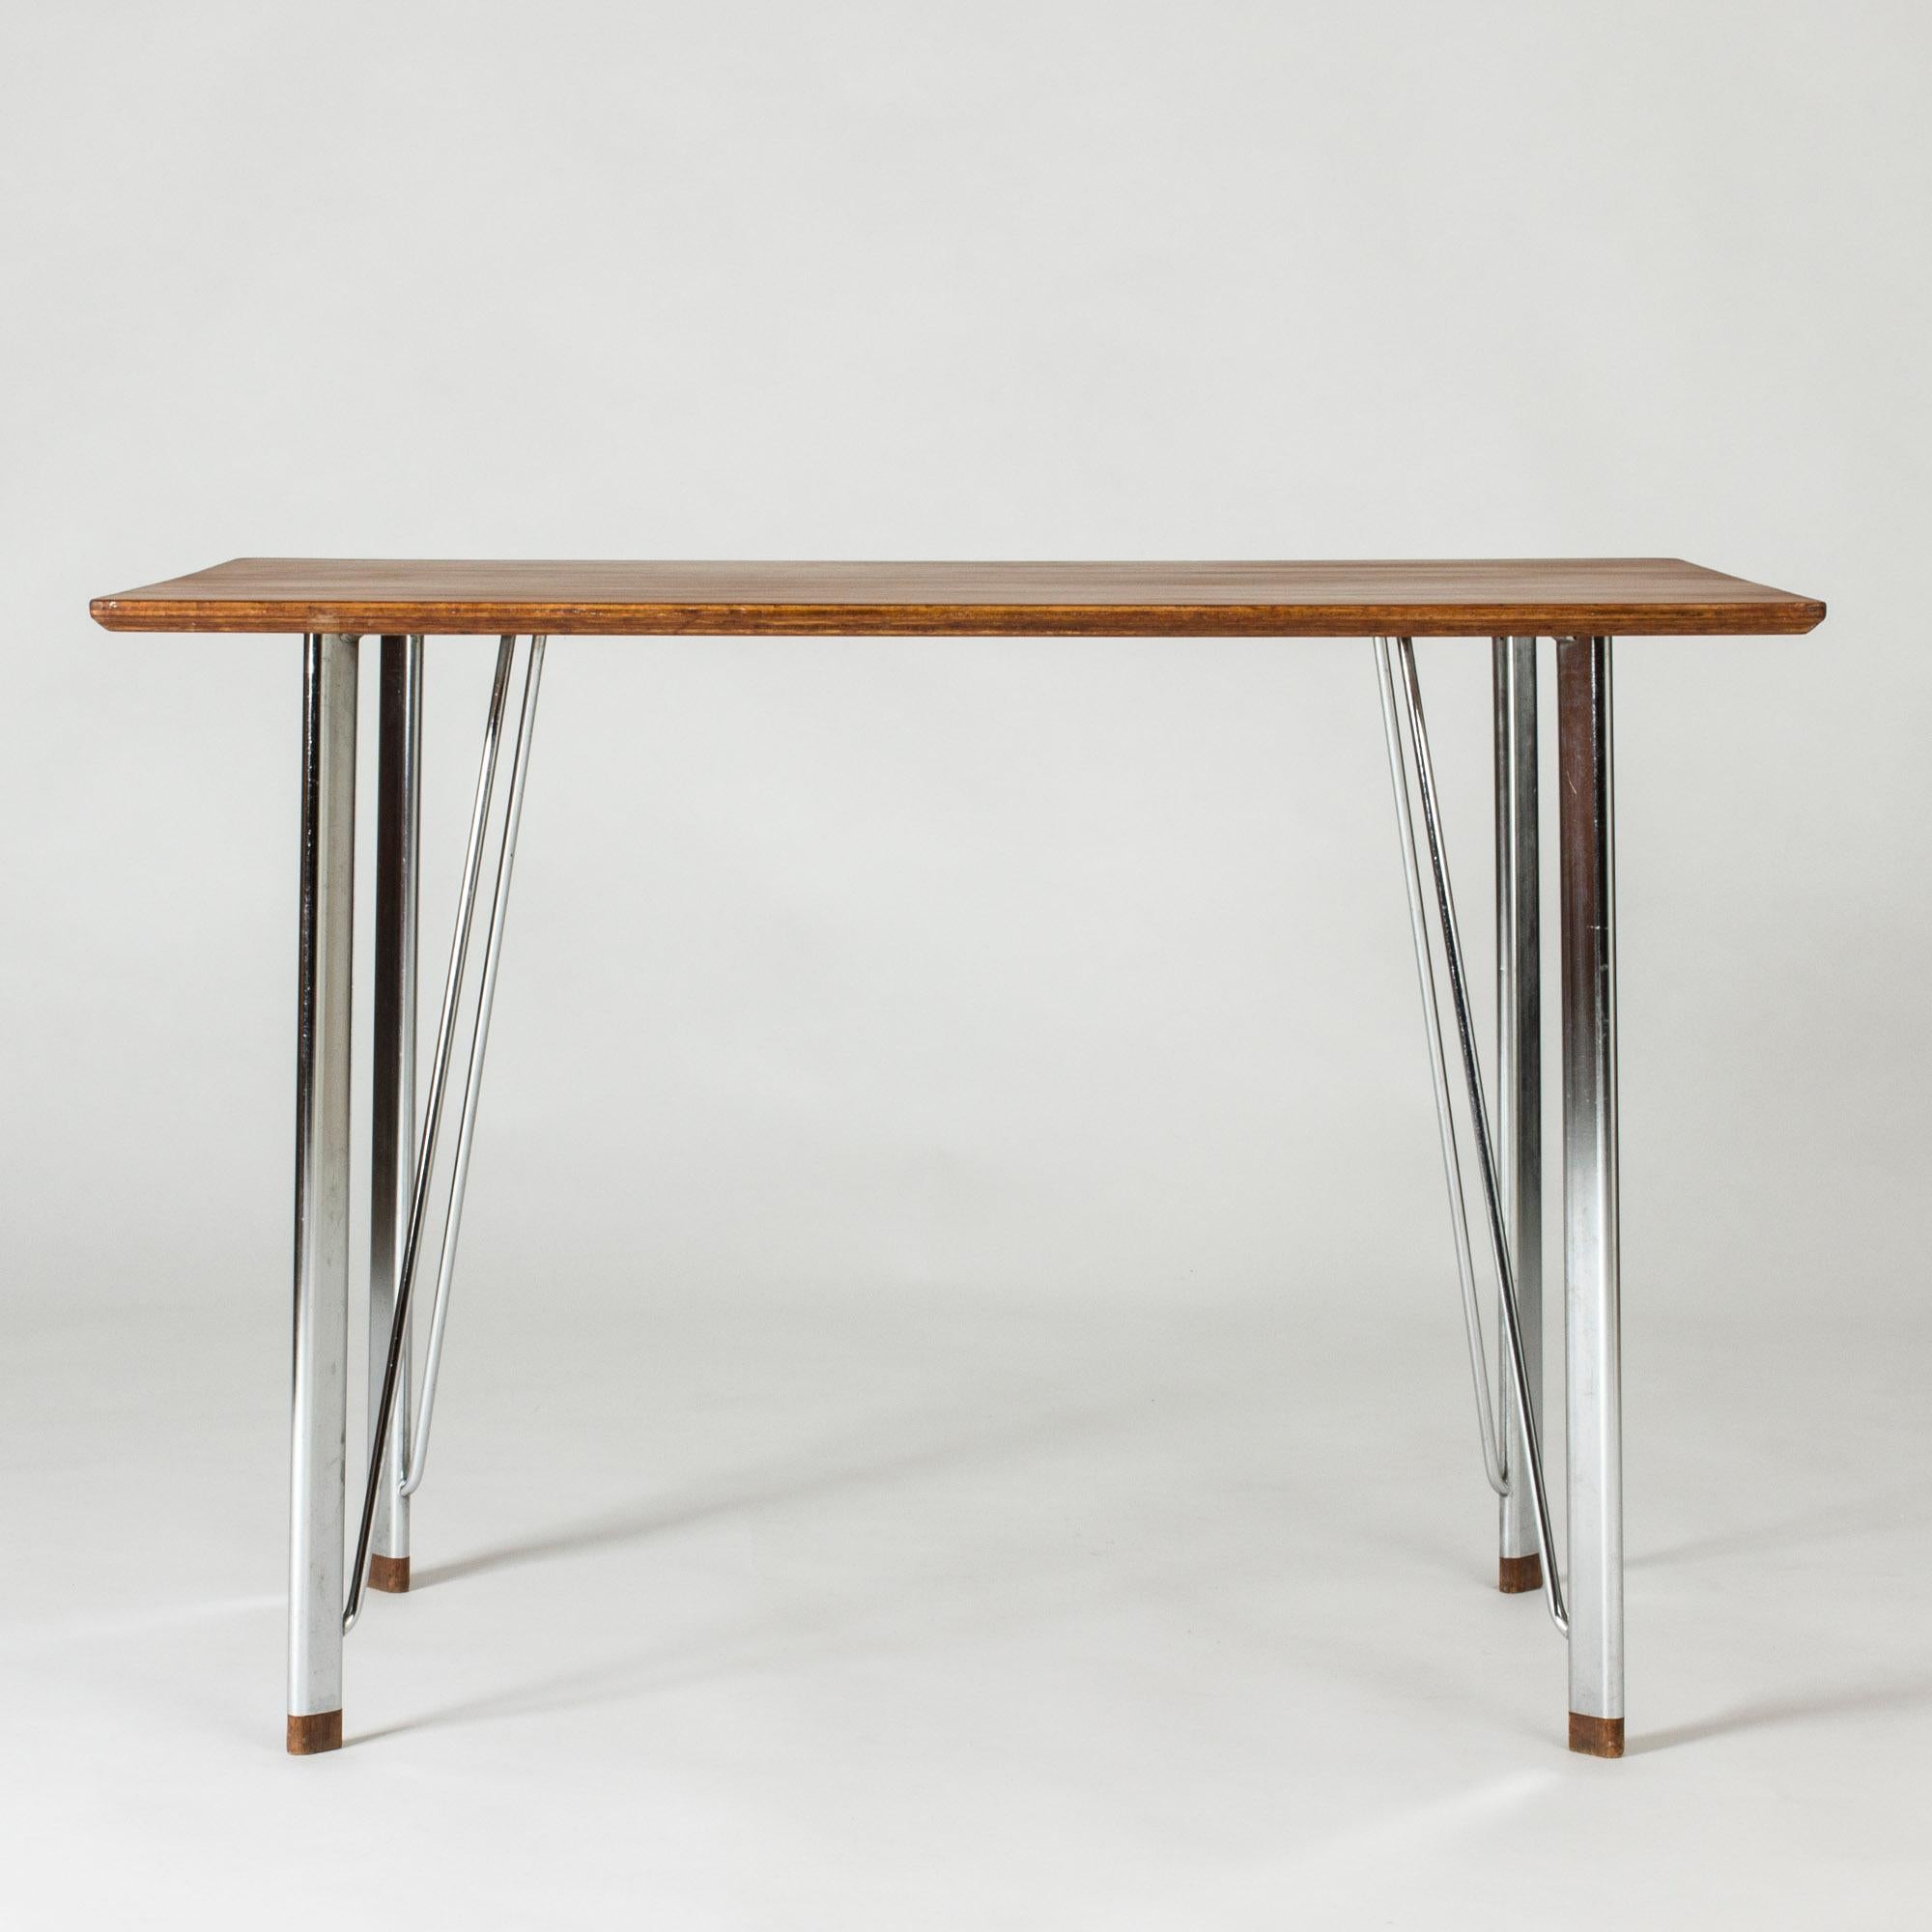 Elegant, minimalist desk by Arne Jacobsen. Sleek steel frame with wooden feet, beautiful teak table top. Neat size.